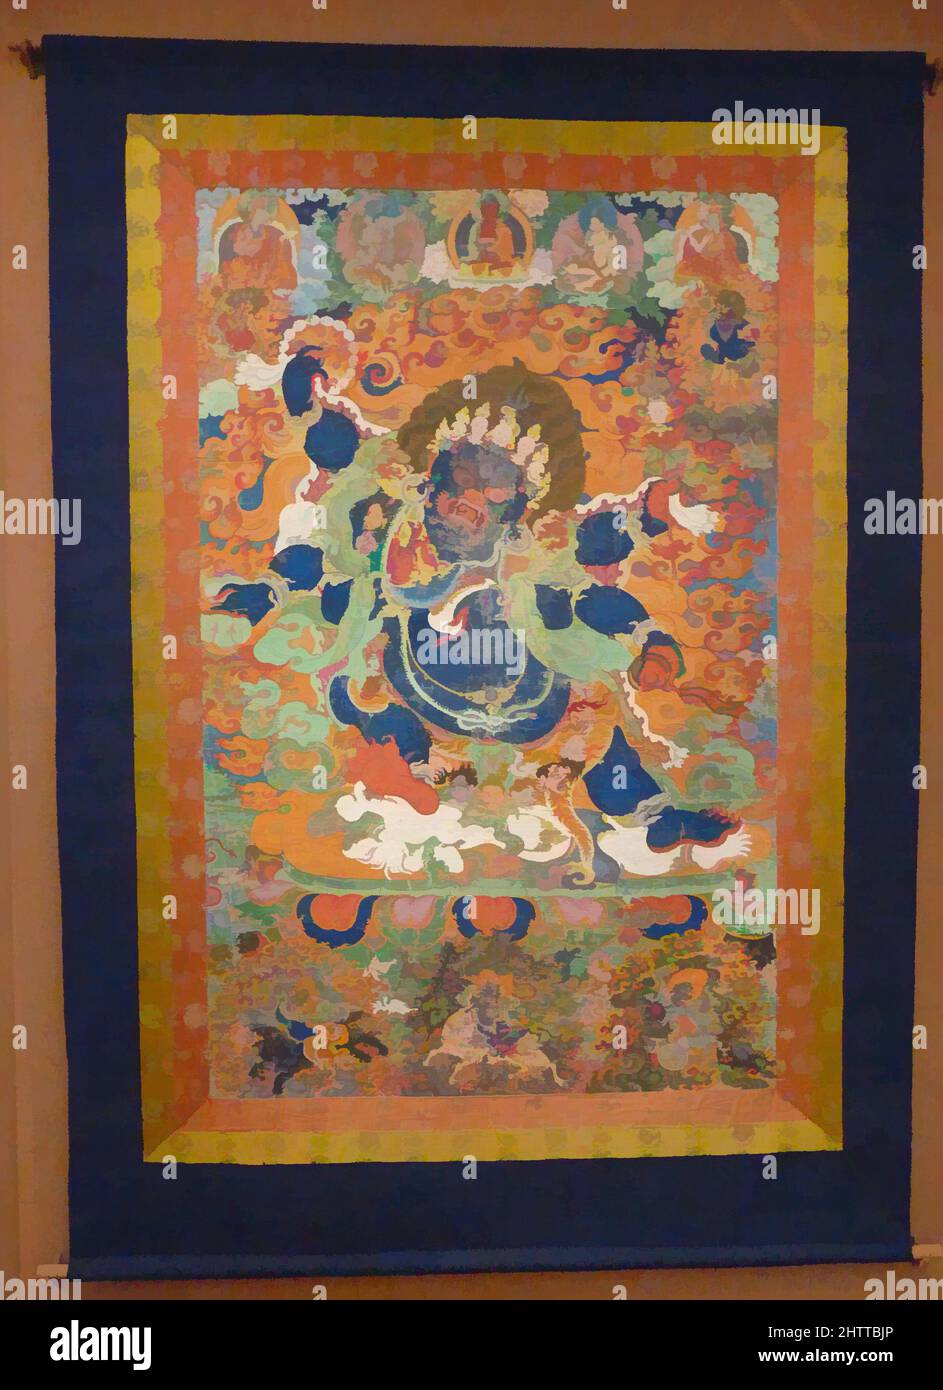 Art inspiré par six-Armed Mahakala, début du 18th siècle, Tibet, Distemper sur tissu, 83 3/ 8 x 57 3/4 po. (211,8 x 146,7 cm), peintures, l'aspect féroce de la bodhisattva Avalokiteshvara, Mahakala est montré dans une auréole flamboyante, ses six mains tenant ses horribles instruments rituels, oeuvres classiques modernisées par Artotop avec un peu de modernité. Formes, couleur et valeur, impact visuel accrocheur sur l'art émotions par la liberté d'œuvres d'art d'une manière contemporaine. Un message intemporel qui cherche une nouvelle direction créative. Artistes qui se tournent vers le support numérique et créent le NFT Artotop Banque D'Images